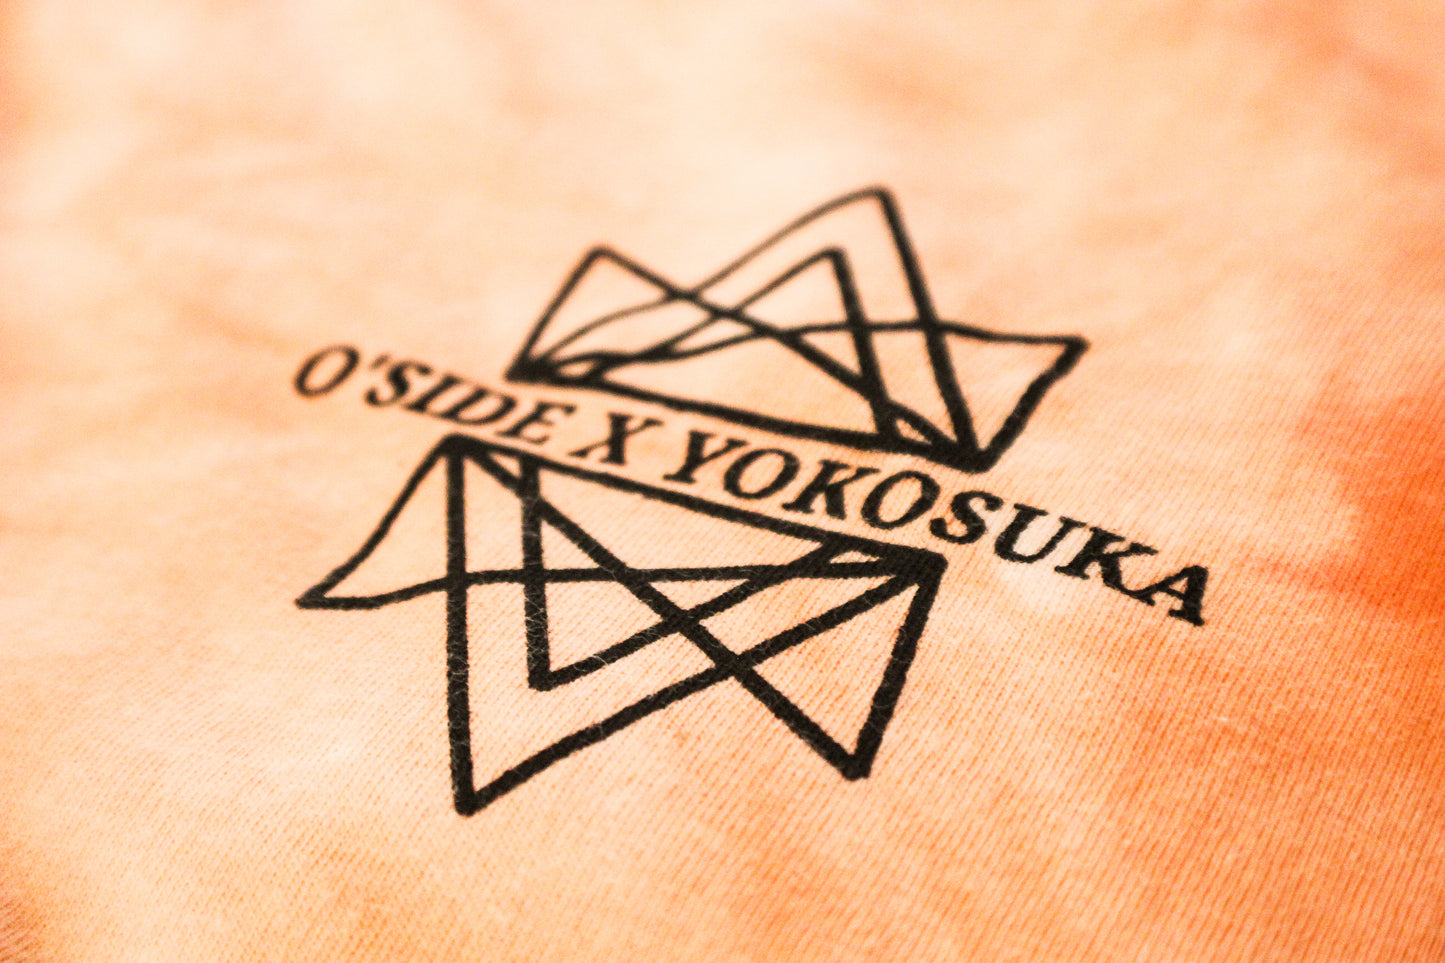 Limited O'side x Yokosuka Shibori Dye Men's Tank top - Large